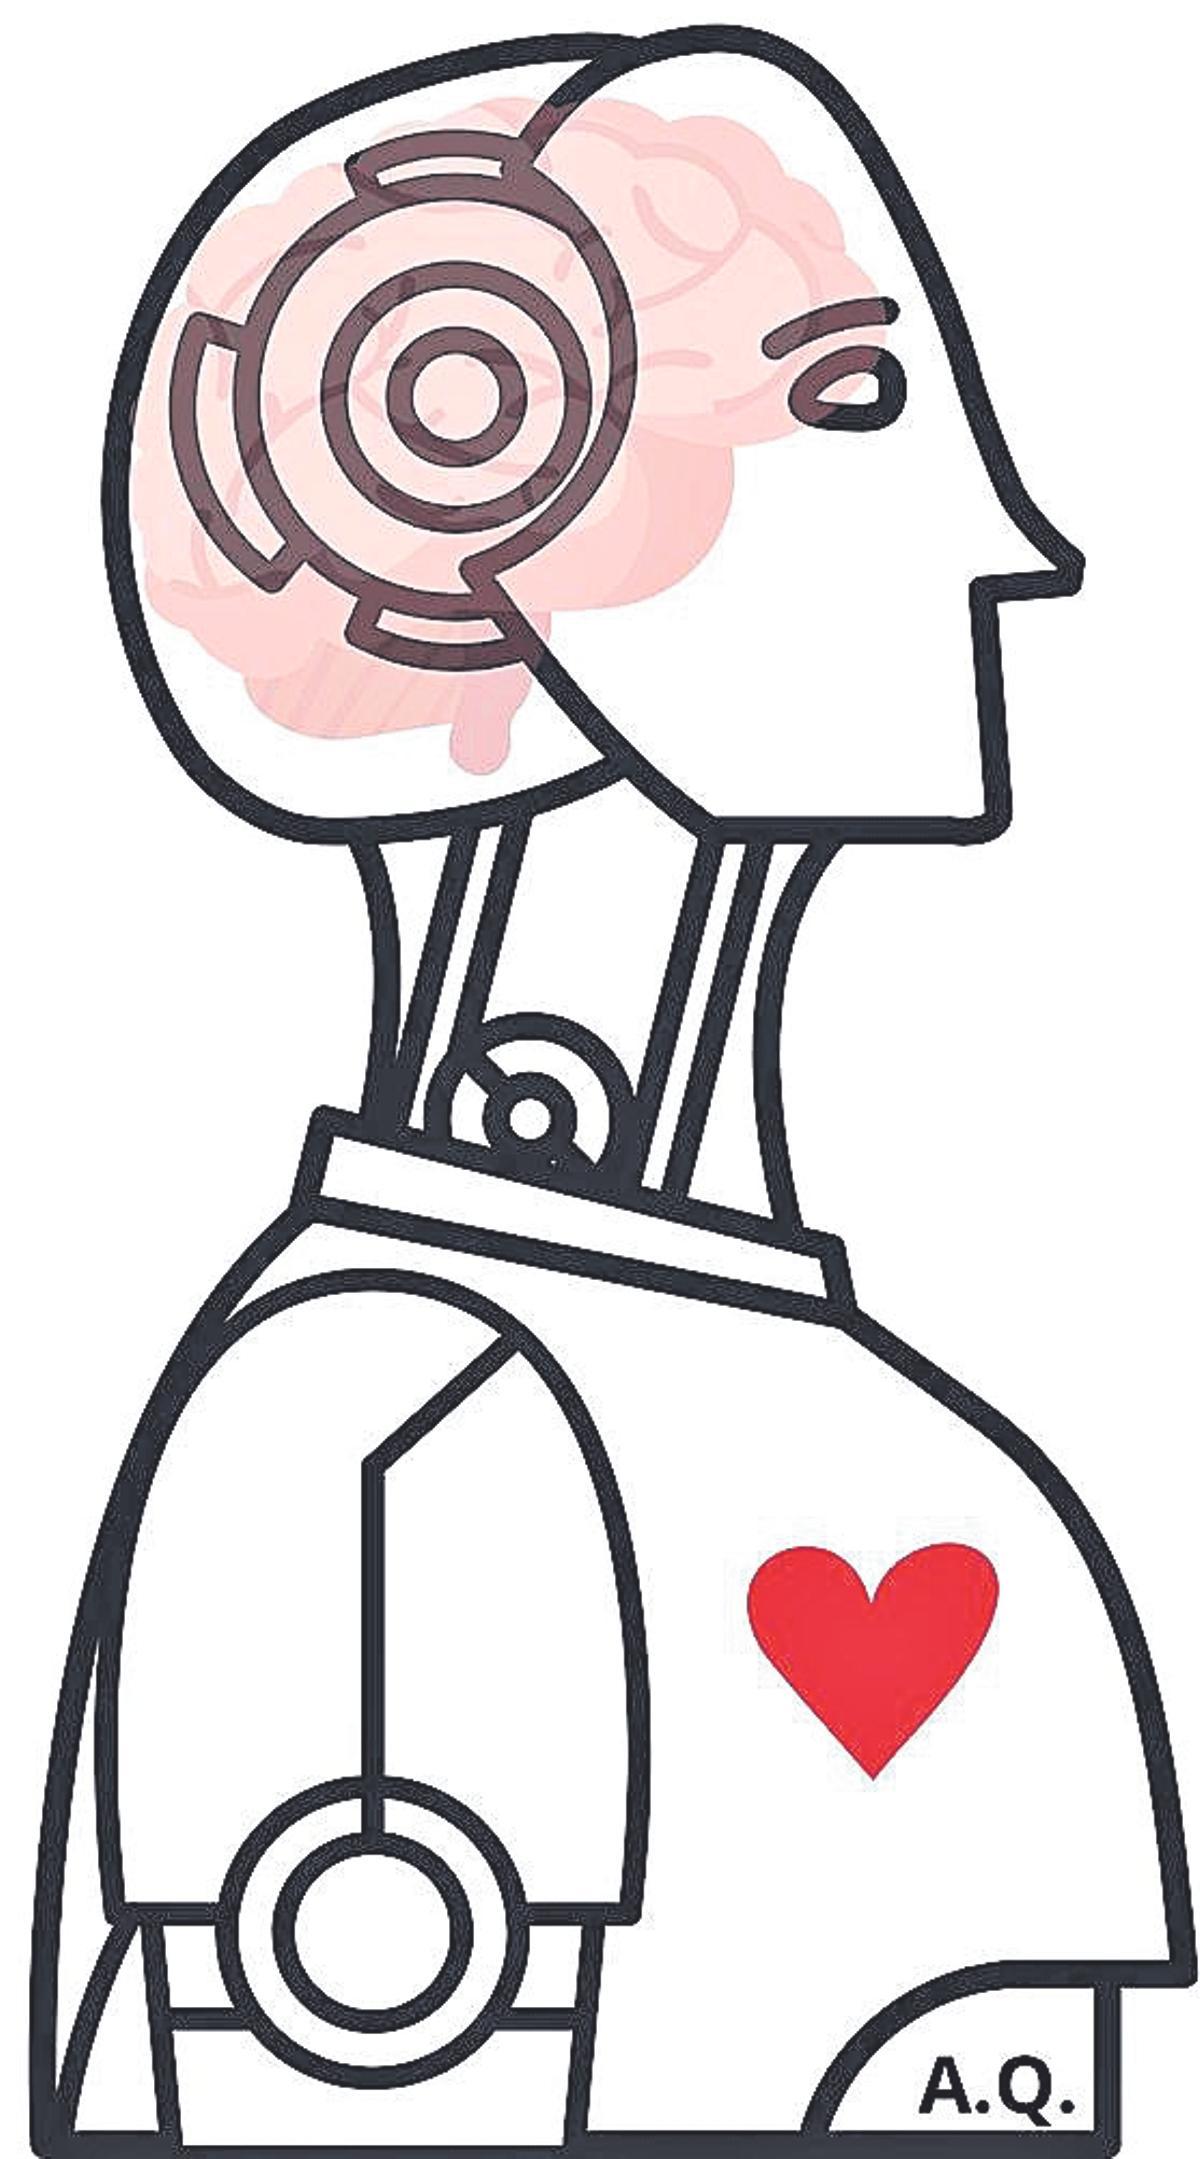 Diseño que representa un robot con corazón